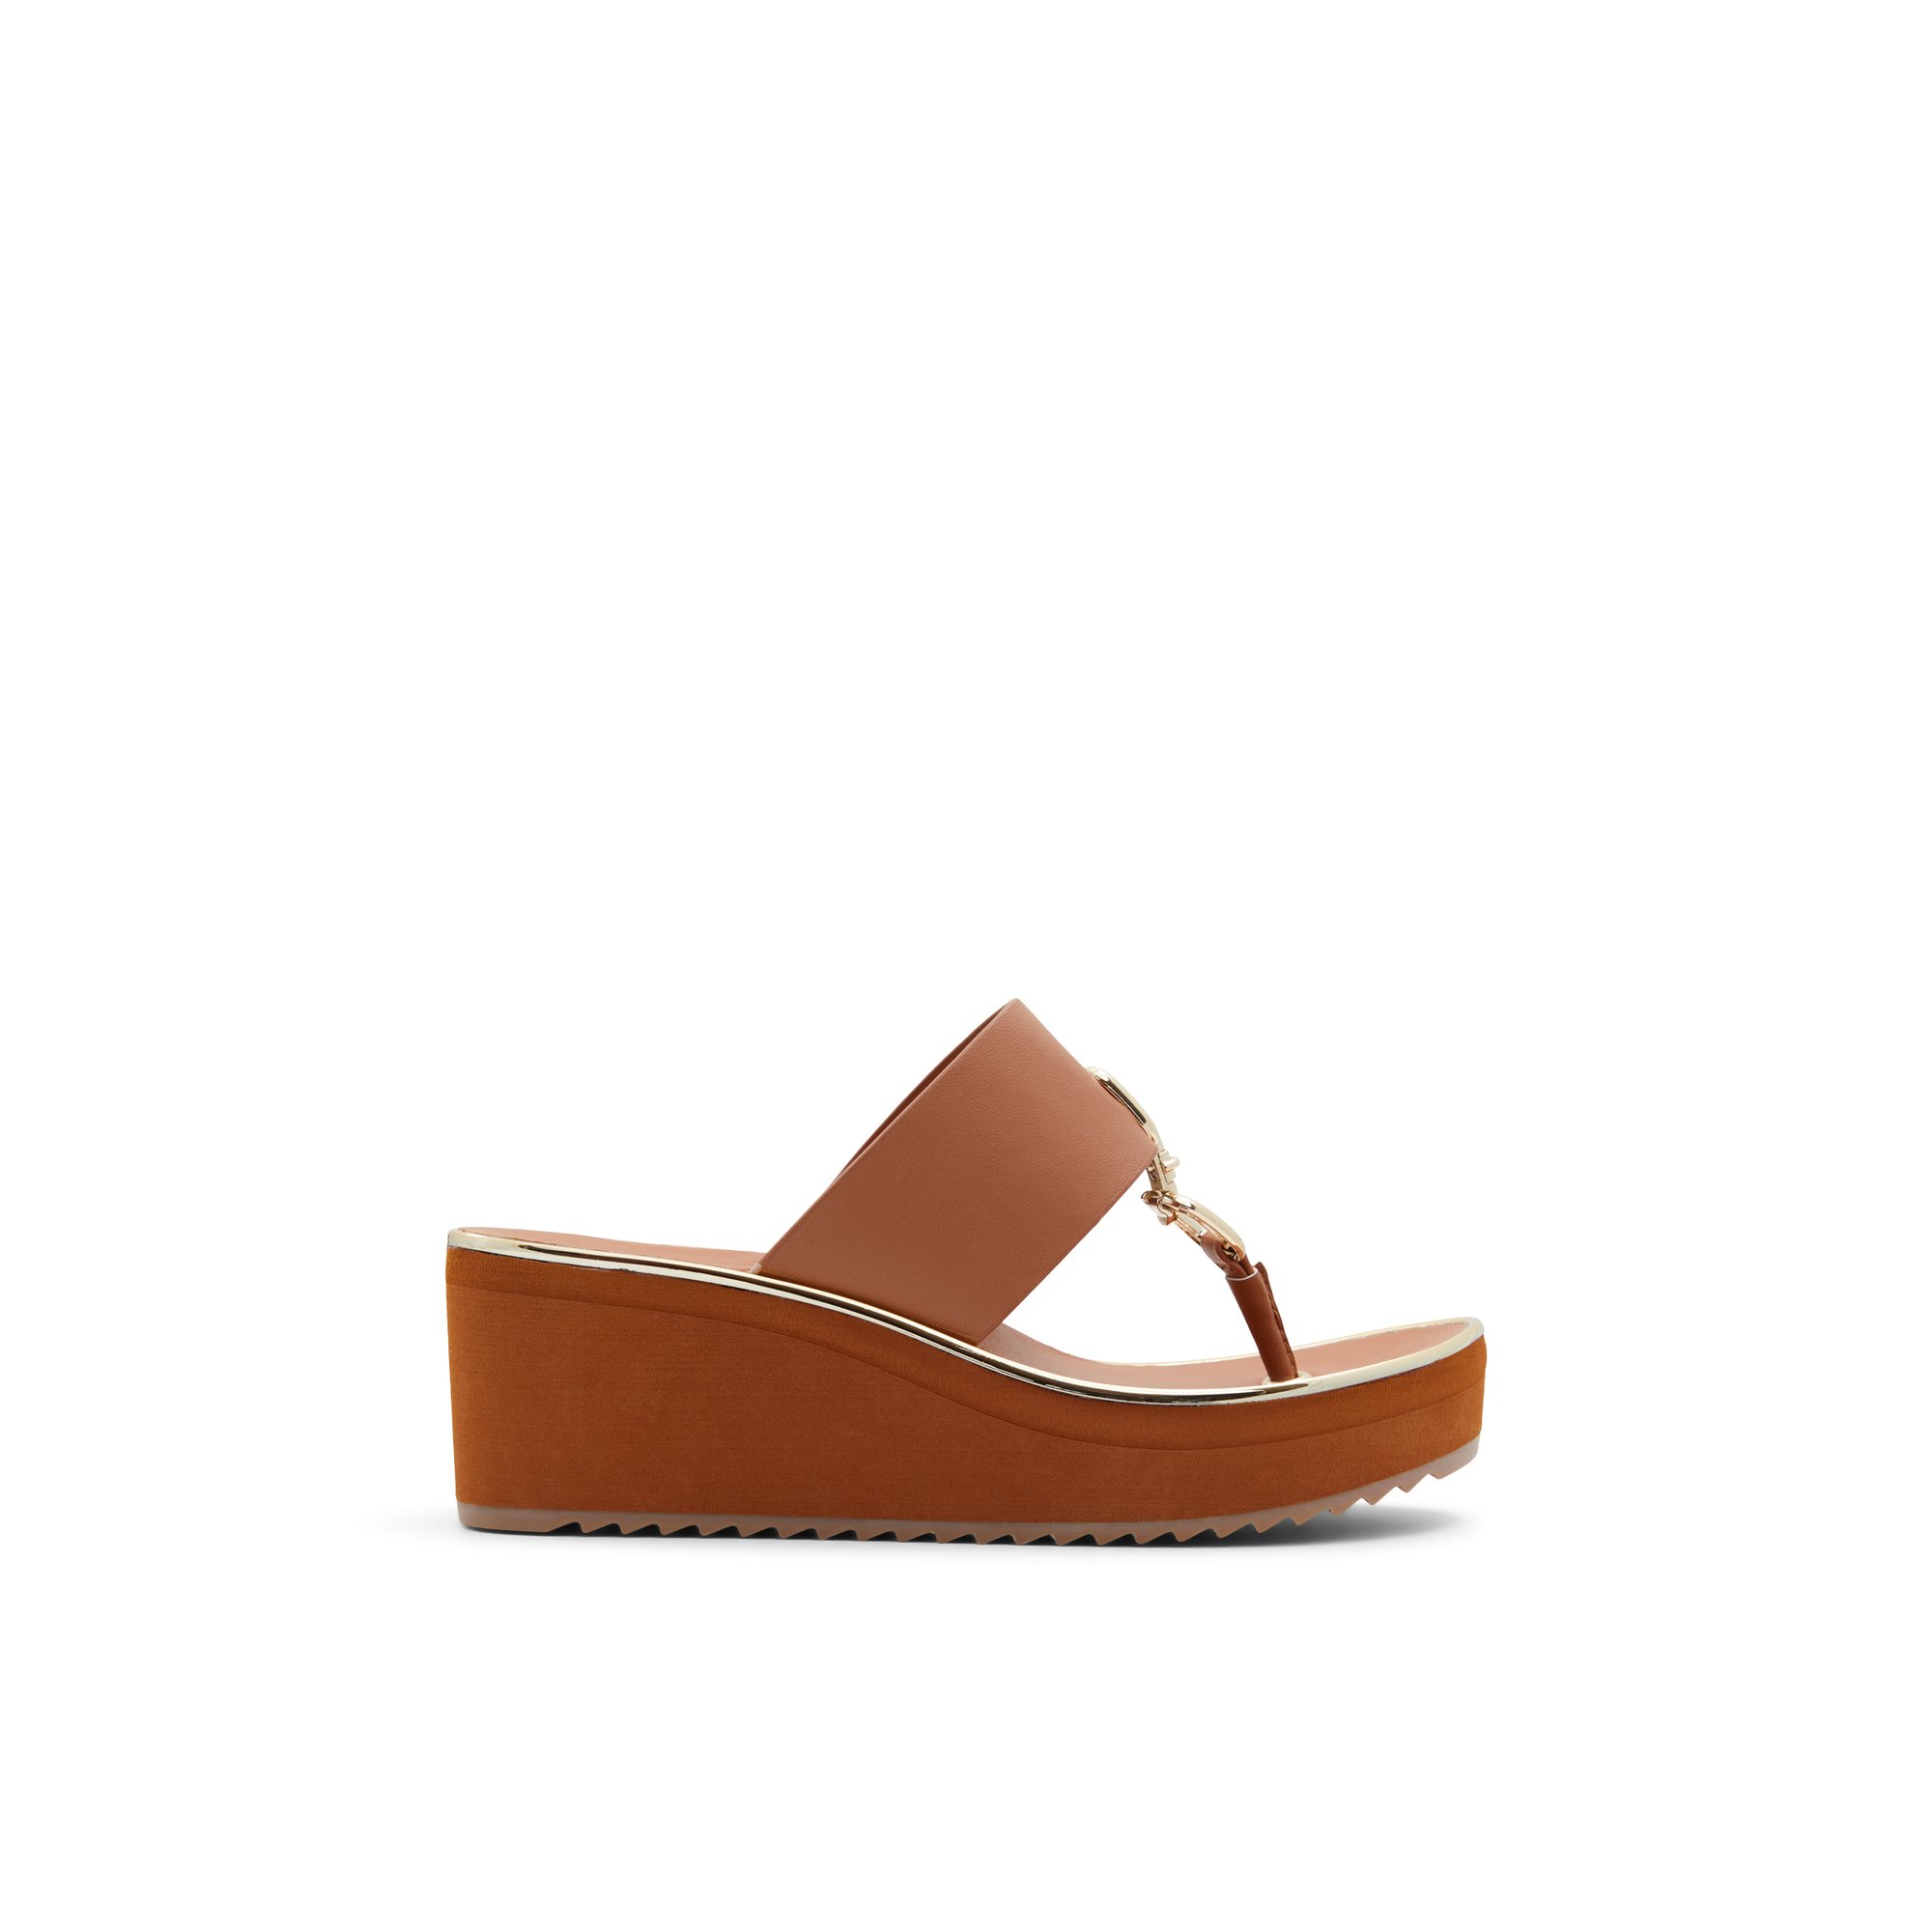 ALDO Maesllan - Women's Wedge Sandals - Brown